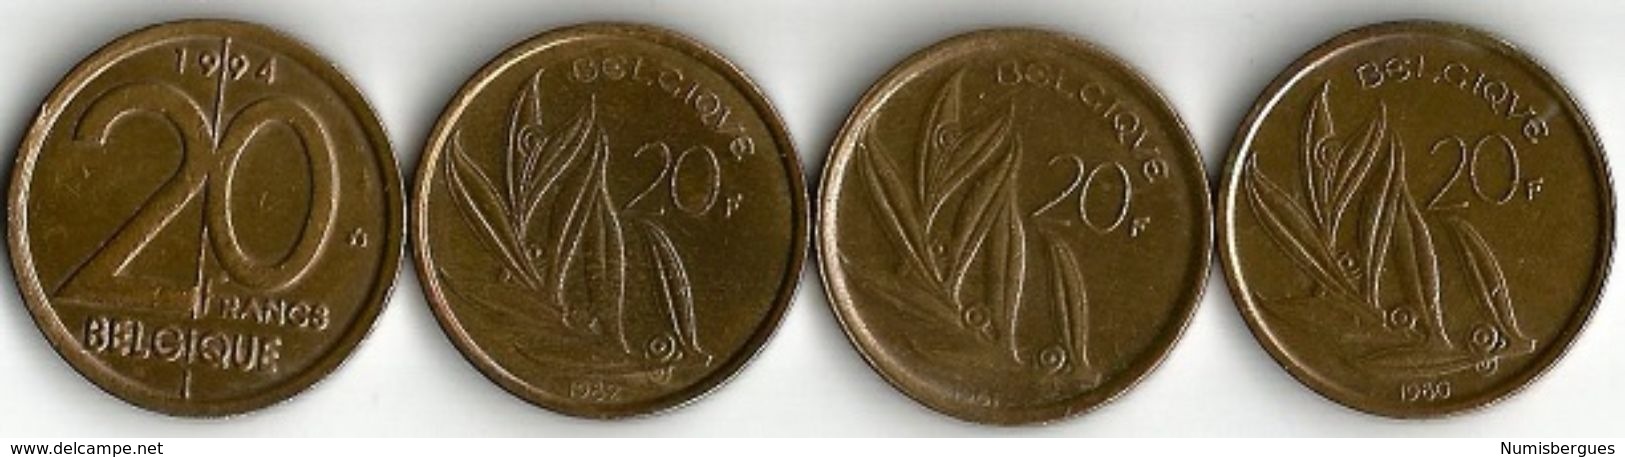 Lot 4 Pièces De Monnaie 20 Francs - 20 Francs